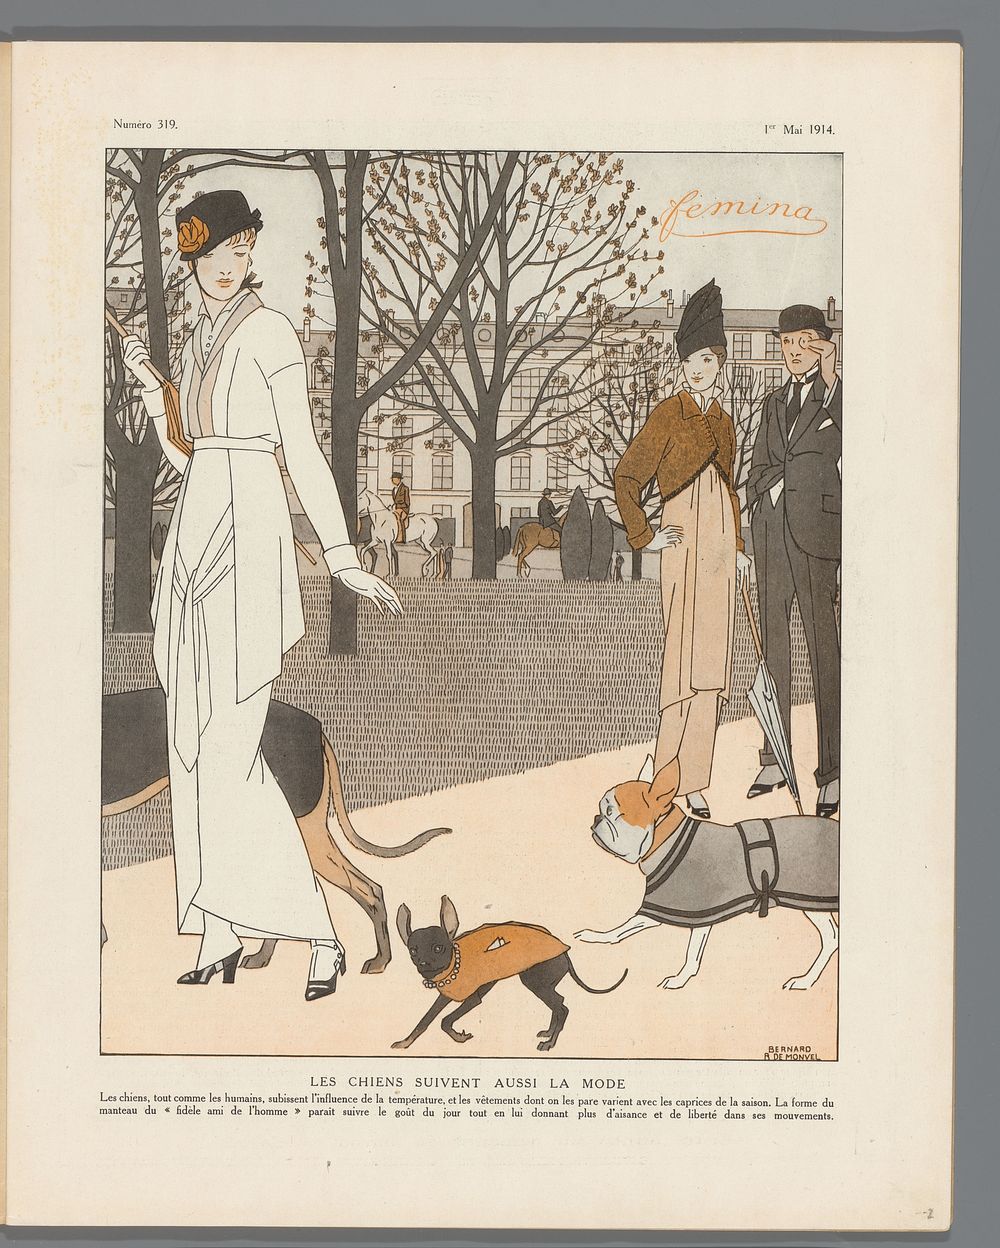 Femina, 1 Mai 1914, 14e Année, nr. 19: modeprent "Les chiens suivent aussi la mode" (1914) by Bernard Boutet de Monvel and…